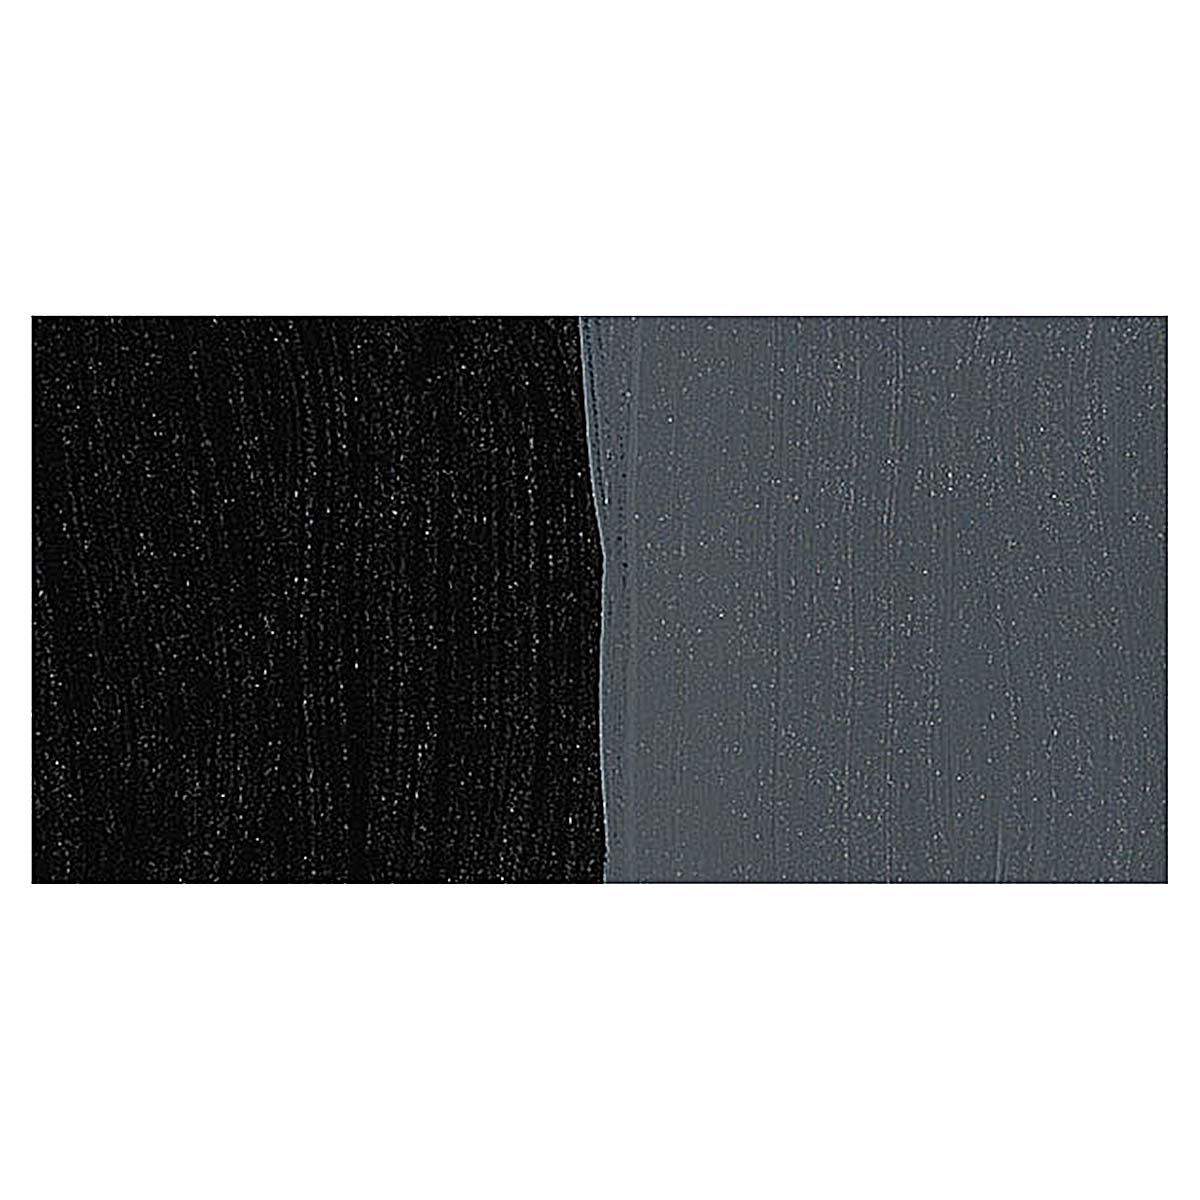 Lamp Black (Carbon Black) (60mL HB Acrylic) - Da Vinci Paint Co.